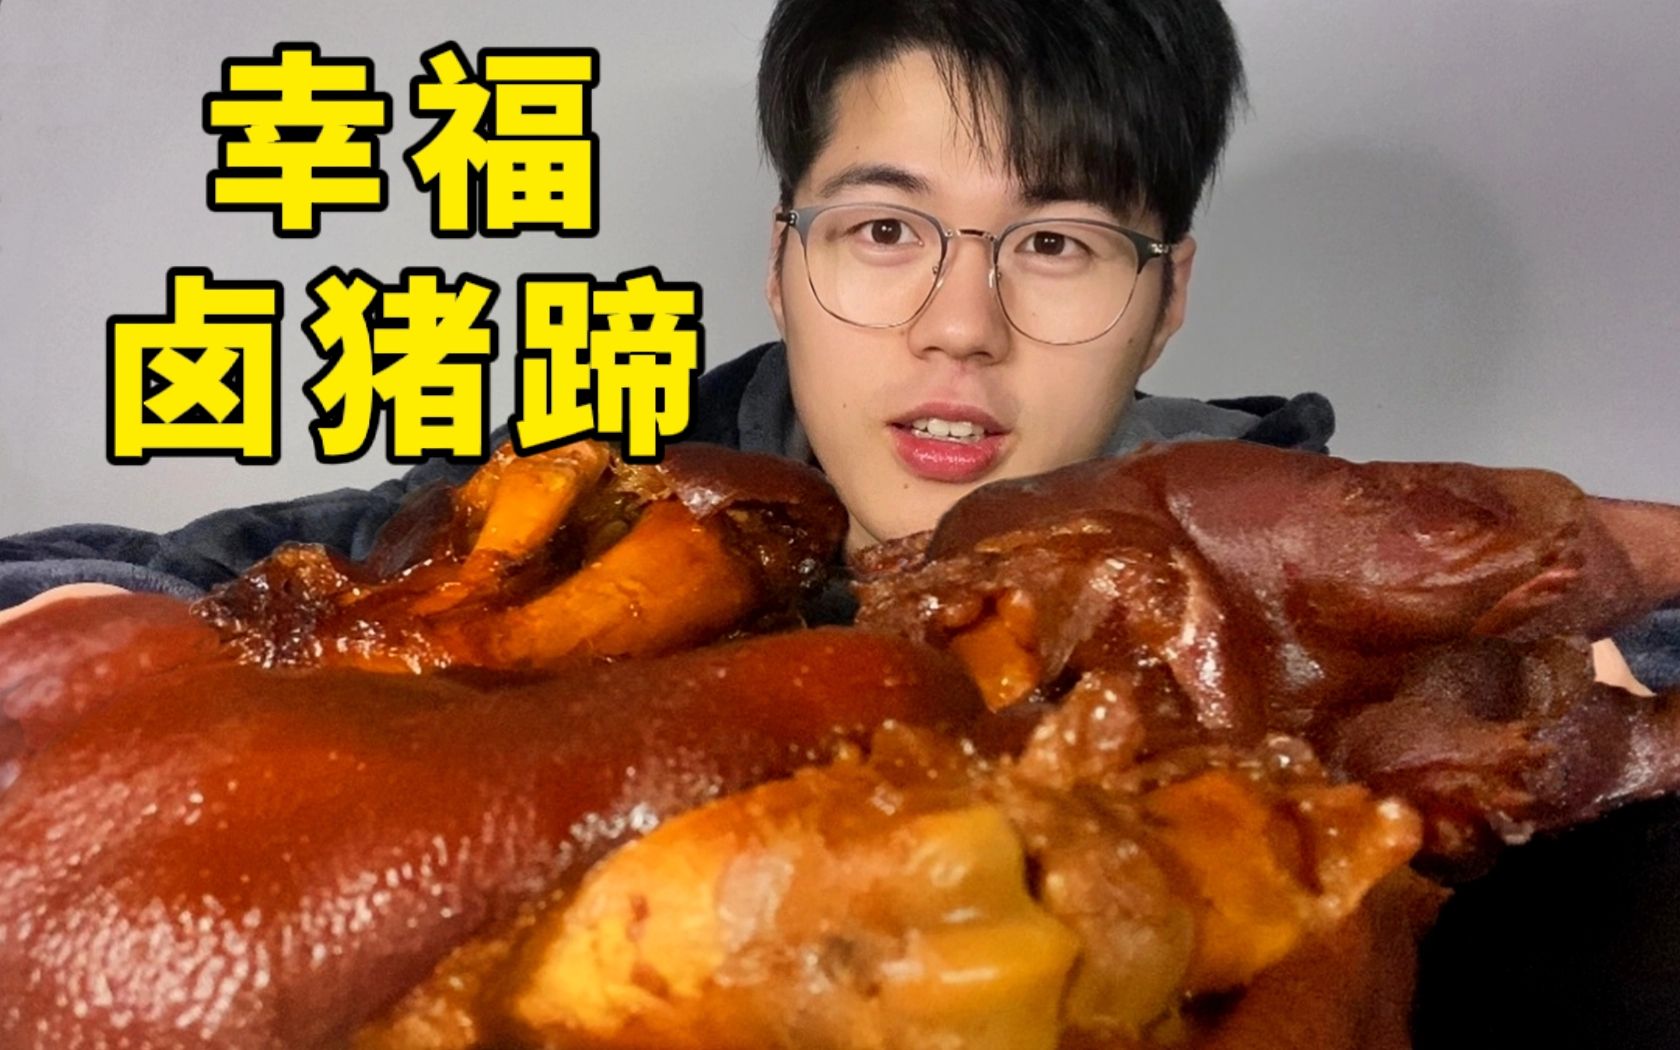 北京男孩第一次啃 粤式炸猪手-按时吃饭并不难怼哥-按时吃饭并不难怼哥-哔哩哔哩视频